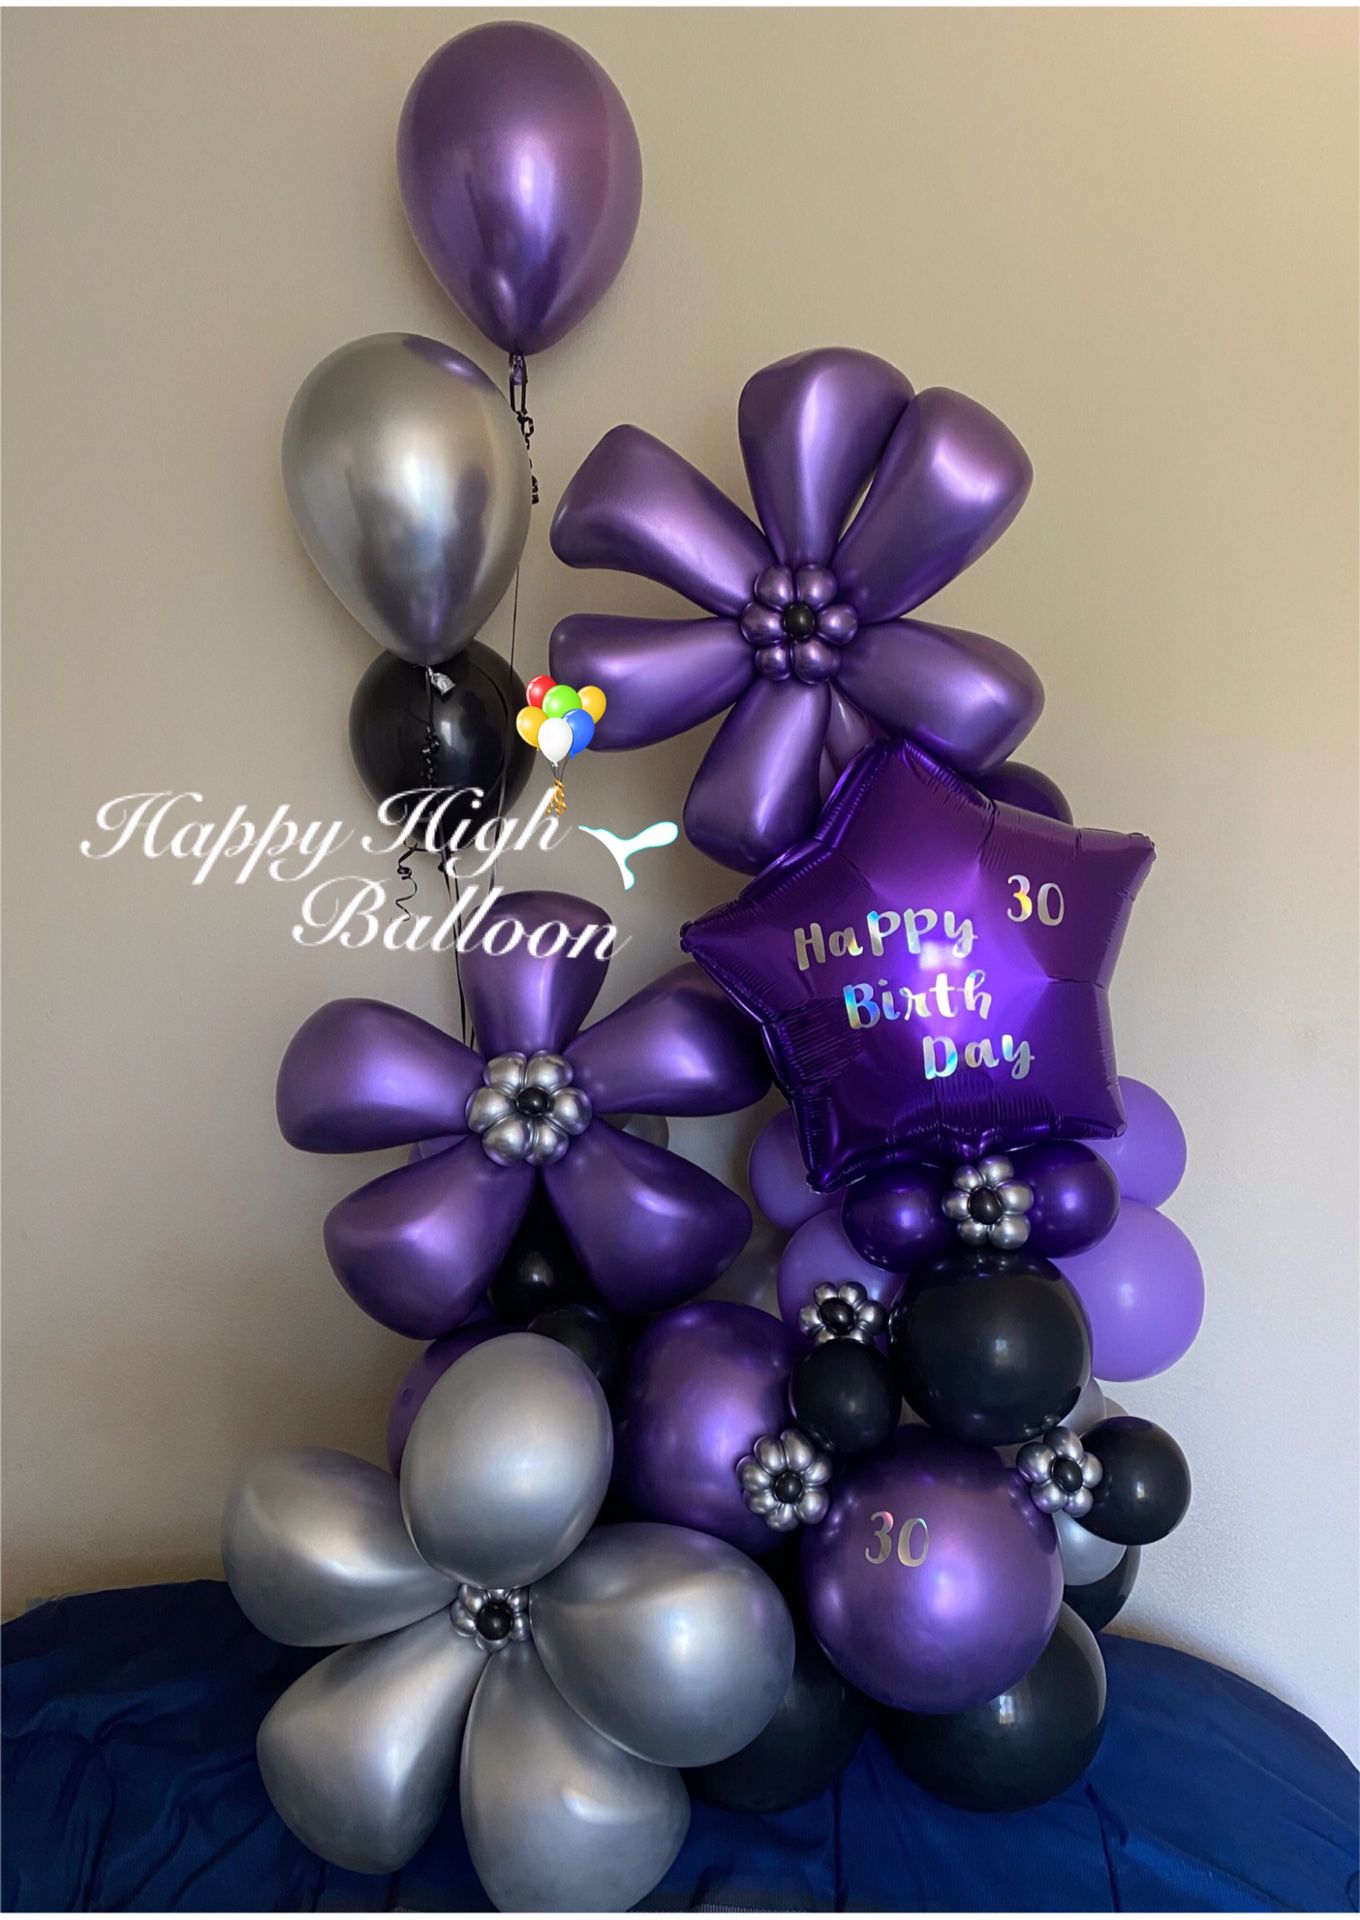 Balloon arrangement